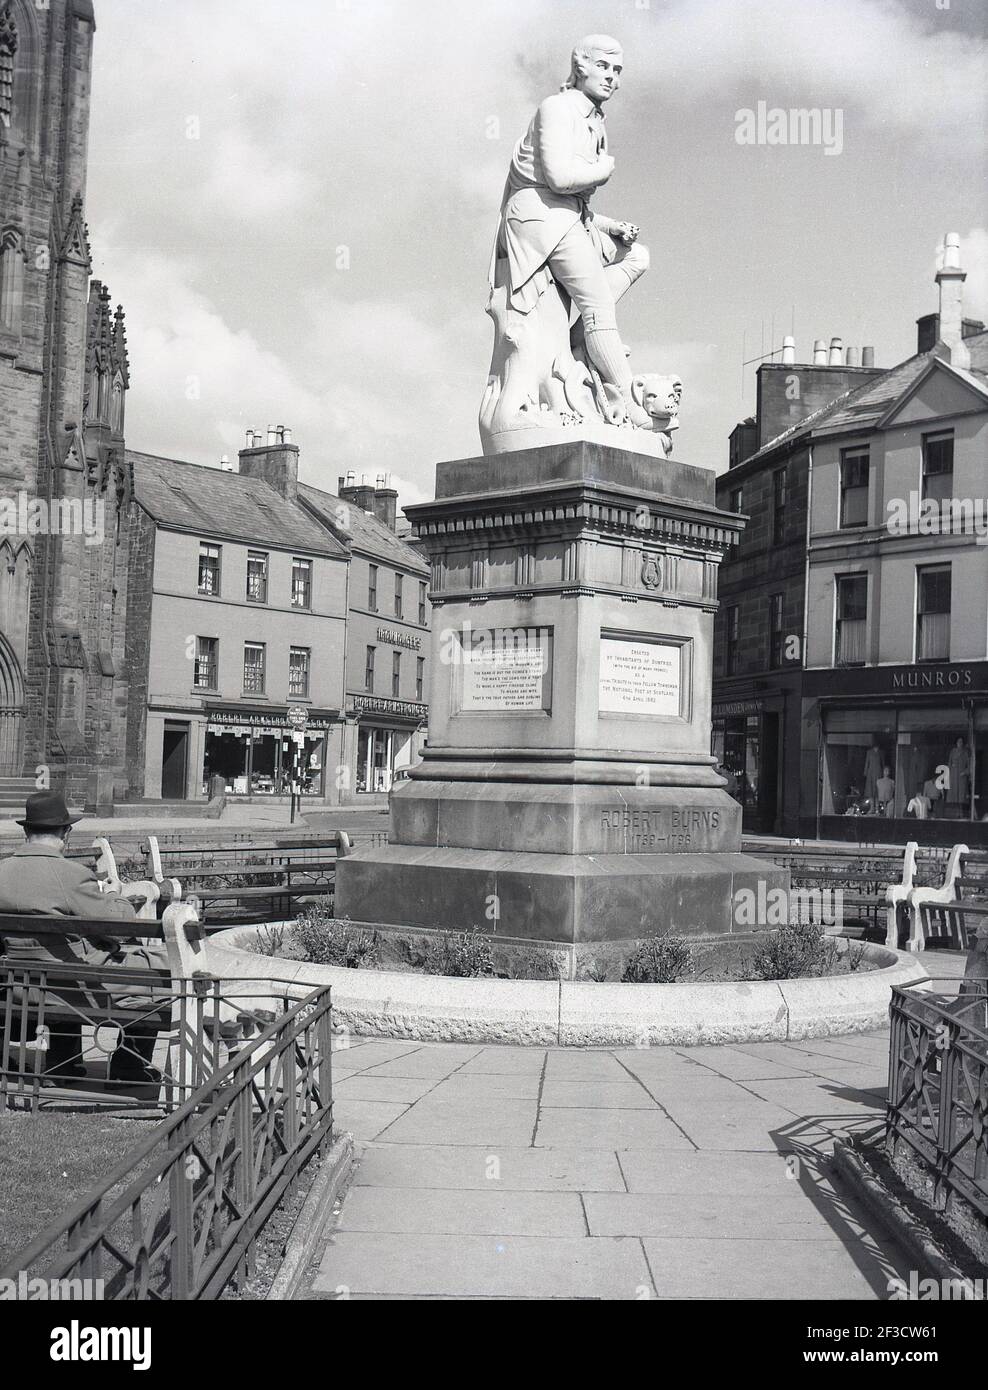 1961, historisch, eine Statue zu Ehren des schottischen Schriftstellers und Nationaldichters Robert Burns, auf dem Platz der Marktstadt Dumries, Schottland, wo er von 1791 bis 1796 lebte. Entworfen von Amelia Robertson Hill, wurde die Statue 1882 in Carrara, Italien, geformt und ihre Lage in Dumfies bedeutet, dass sie von der Grayfairs Kirche übersehen wird. Stockfoto